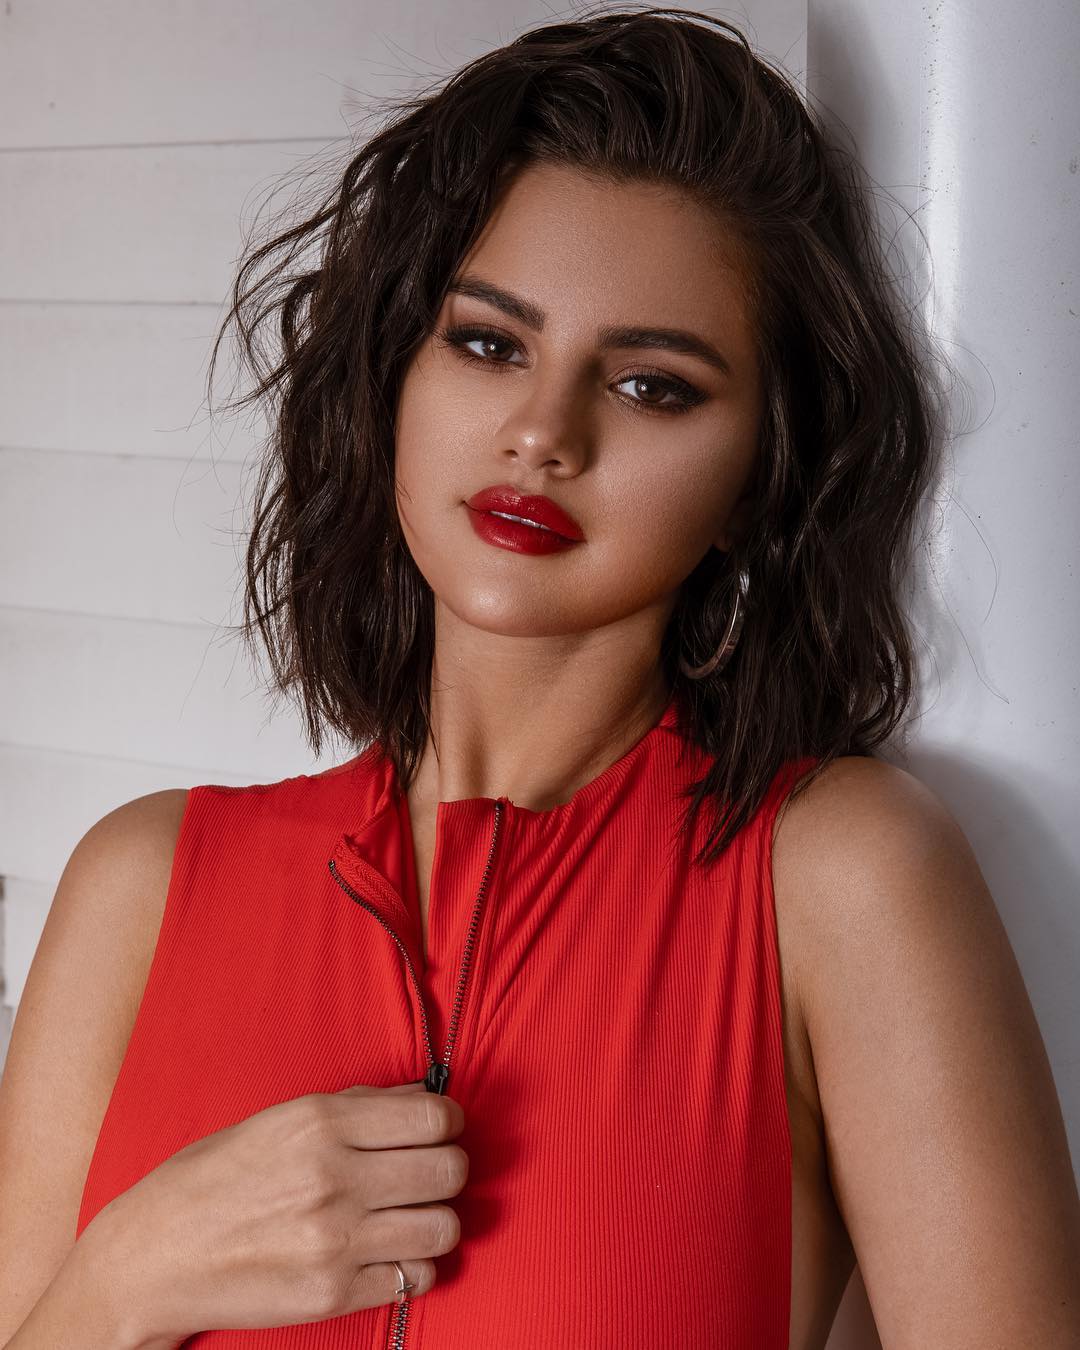 Selena Gomez Sizzles In Red Bikini That She Designed To Hide Her Kidney Transplant Scar